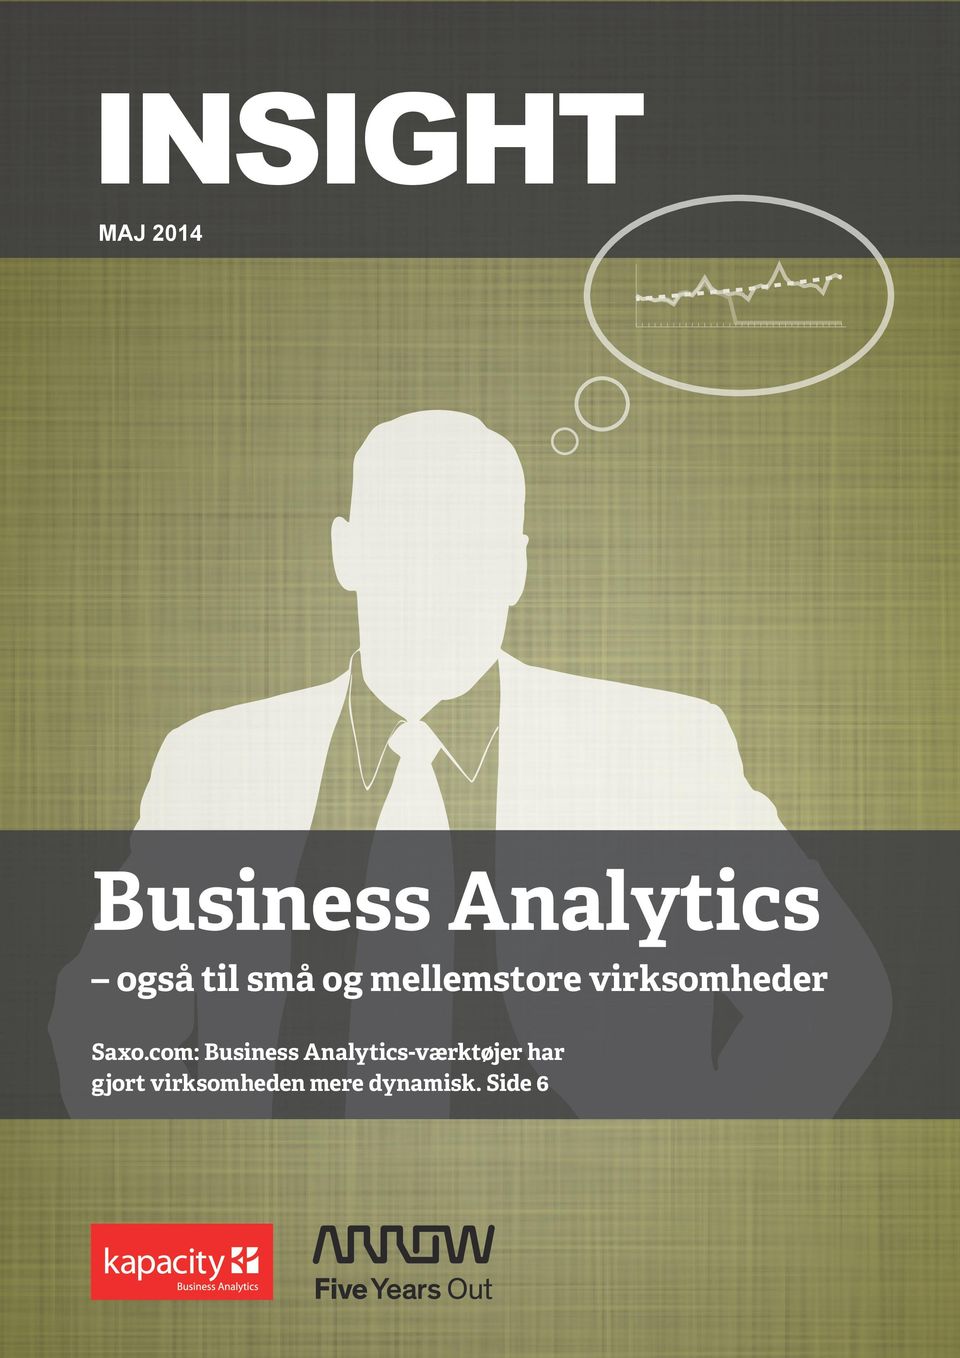 com: Business Analytics-værktøjer har